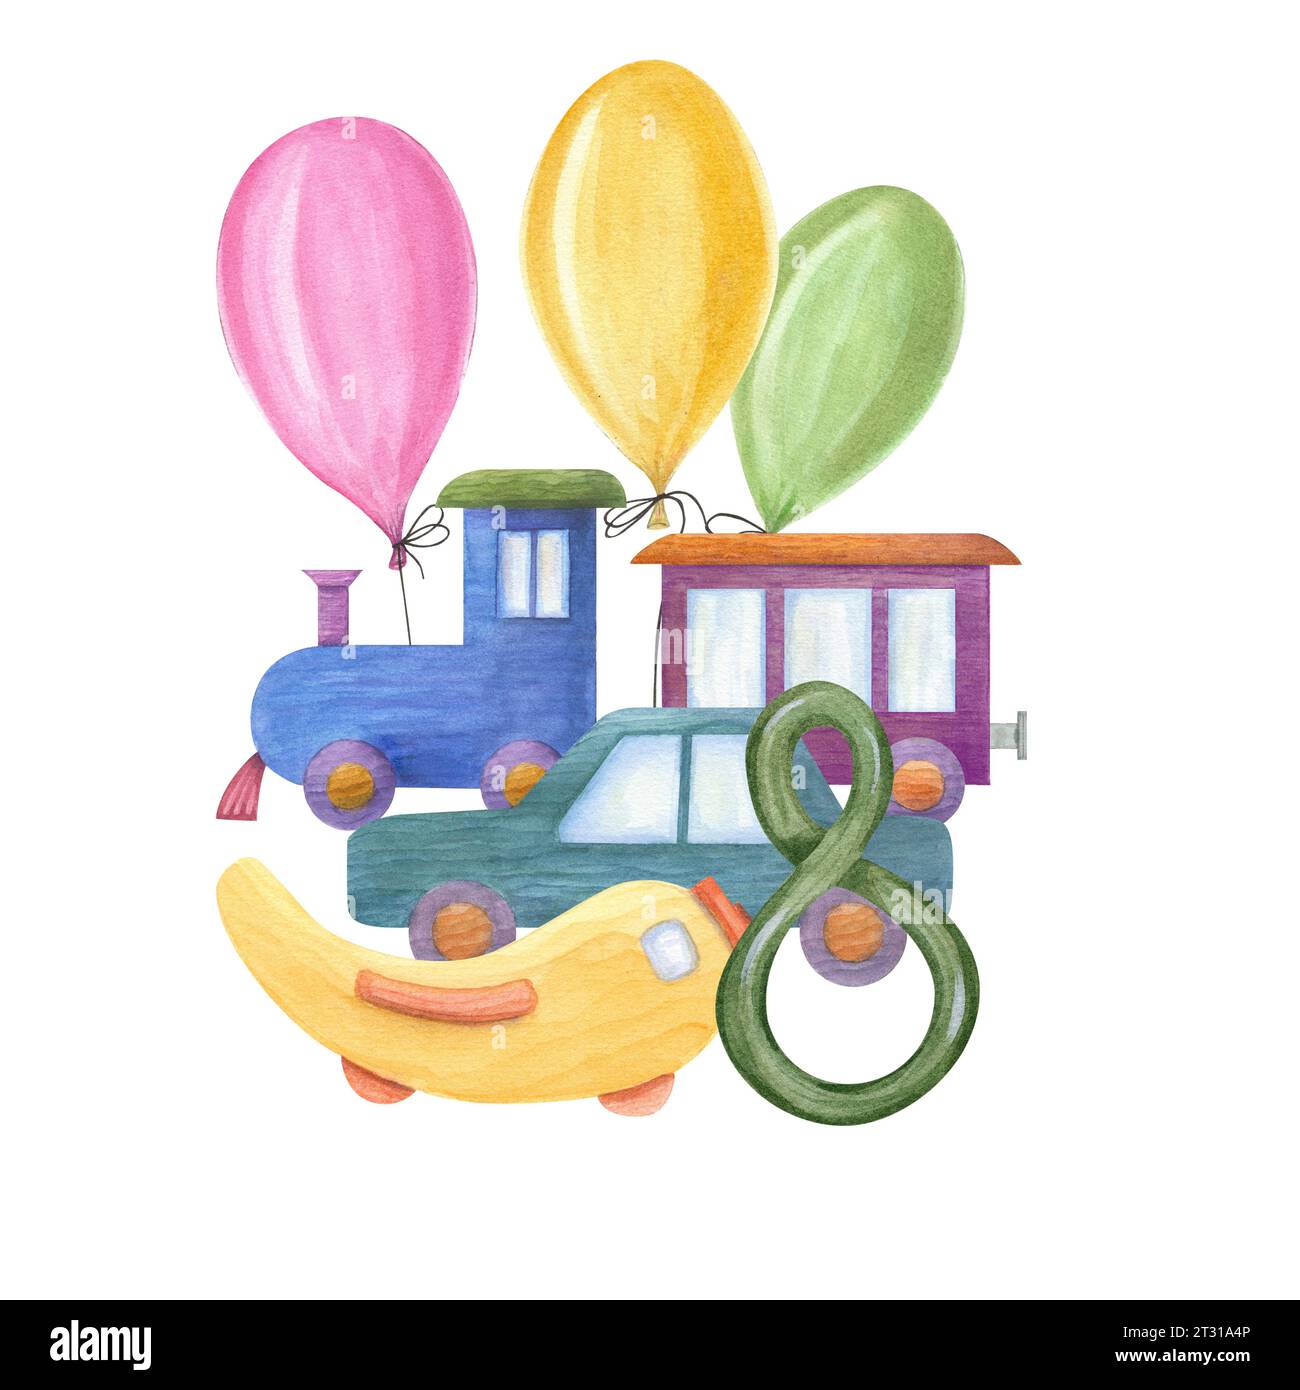 Dampflokomotive mit Wagen, Auto, Flugzeug, bunte Ballons, Nummer 8. Kinderspielzeug aus Holz. Aquarellabbildung. Stockfoto